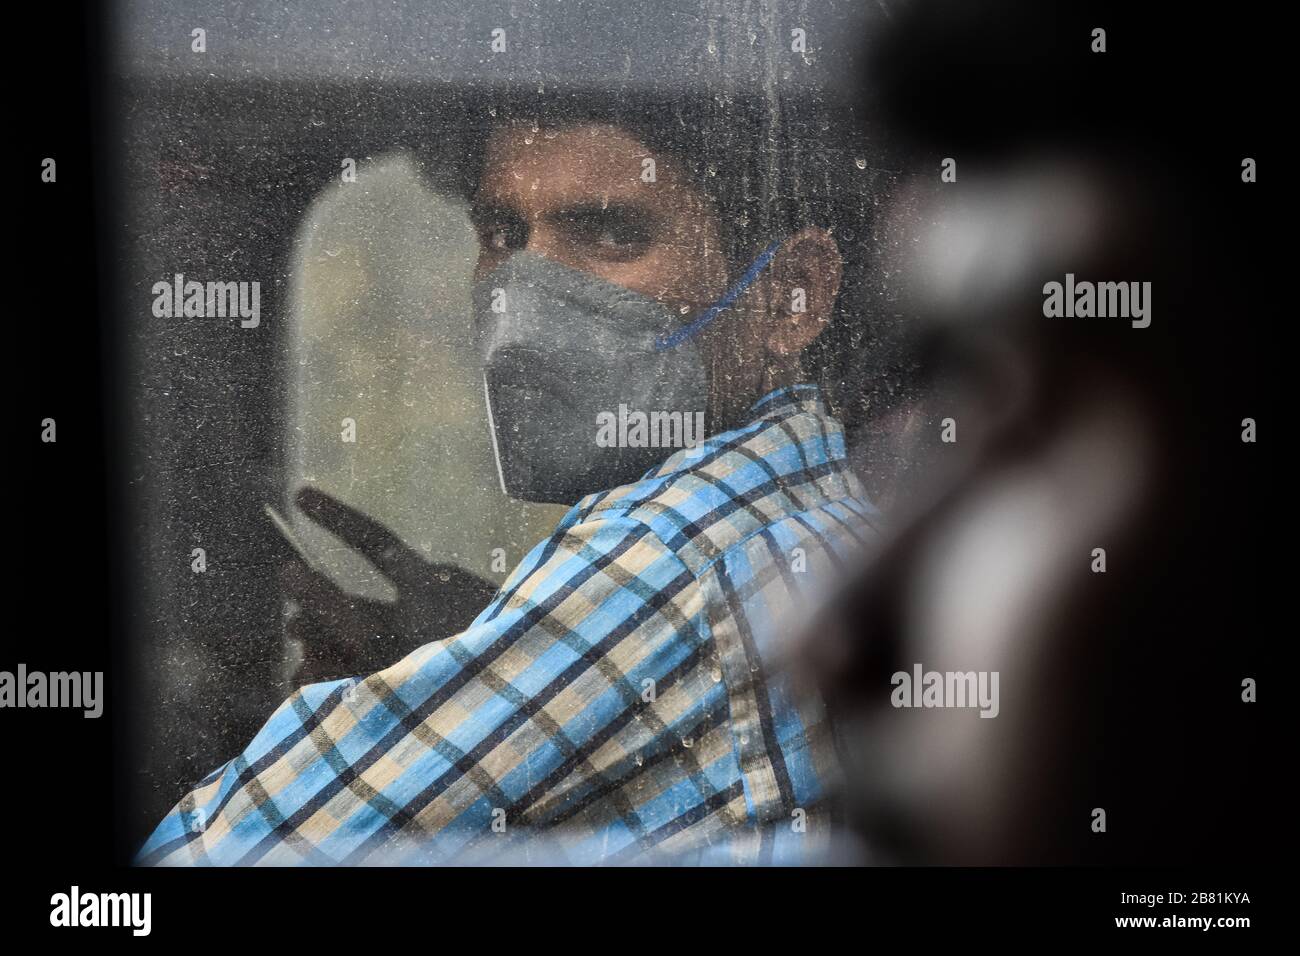 Ein Mann, der einen Facemask als vorbeugende Maßnahme gegen das COVID-19-Coronavirus trägt.Indien hat 197 Fälle des Covid-19-Coronavirus gemeldet und 4 Patienten sind infolgedessen gestorben. Stockfoto